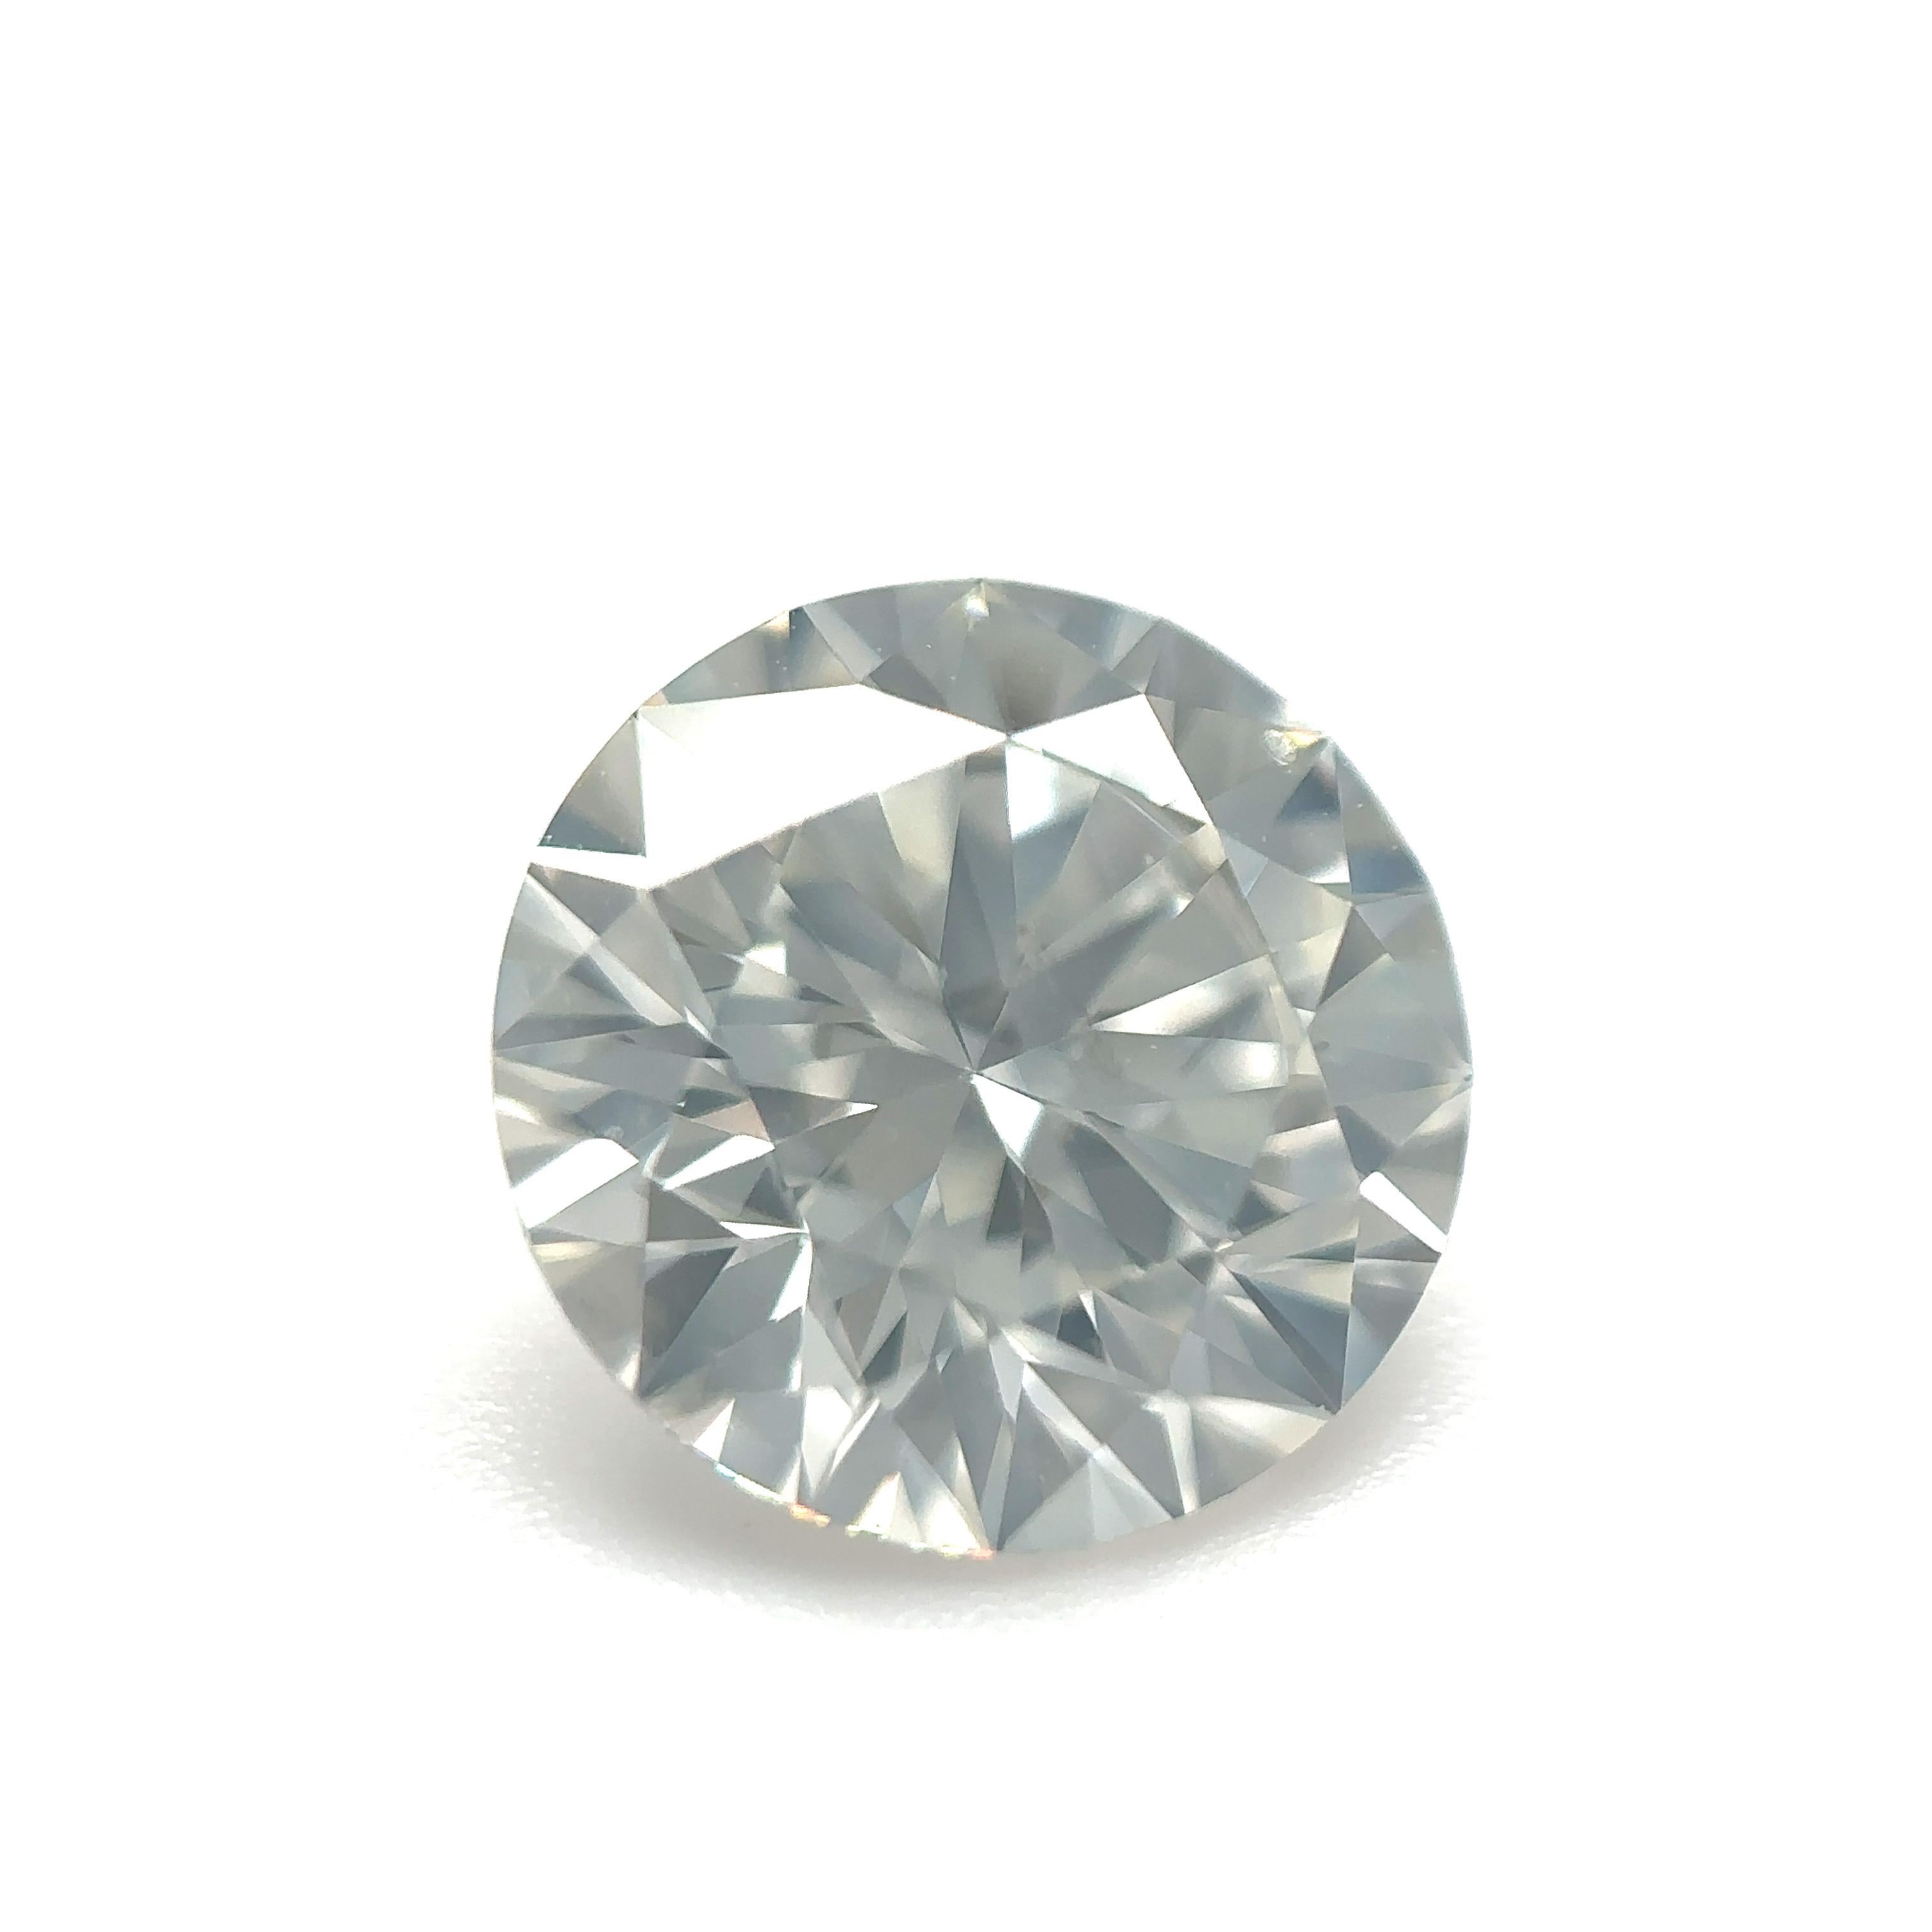 GIA-zertifizierter 1,78 Karat runder Brillant-Diamantstein (Option zur Anpassung)

Farbe: J
Klarheit: SI1 

Ideal für Verlobungsringe, Eheringe, Diamant-Halsketten und Diamant-Ohrringe. Setzen Sie sich mit uns in Verbindung, um Ihren Schmuck zu